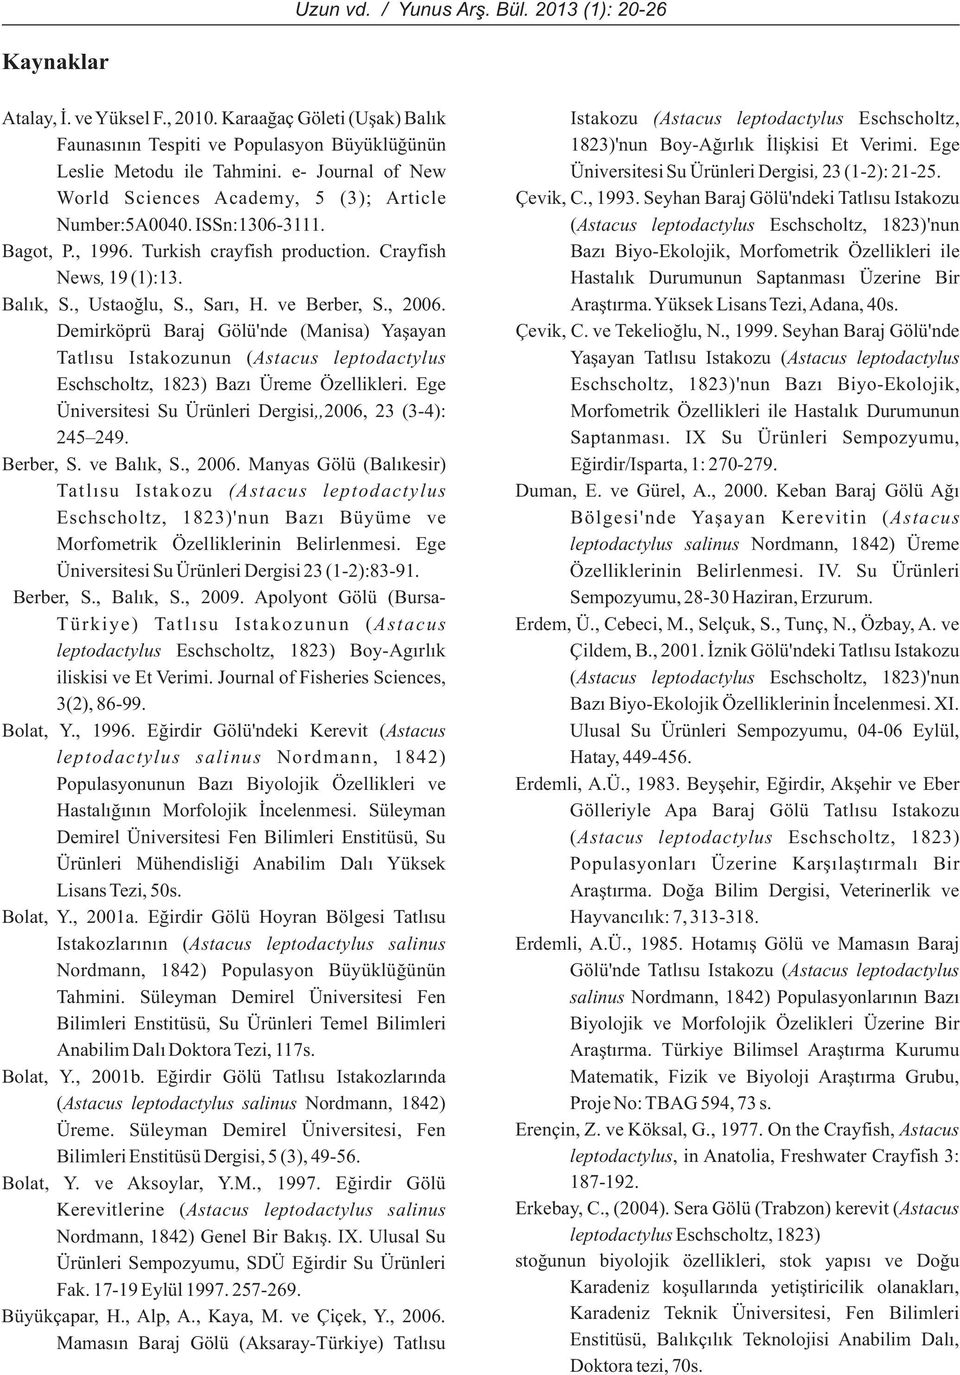 e- Journal of New Üniversitesi Su Ürünleri Dergisi, 23 (1-2): 21-25. World Sciences Academy, 5 (3); Article Çevik, C., 1993. Seyhan Baraj Gölü'ndeki Tatlýsu Istakozu Number:5A0040. ISSn:1306-3111.